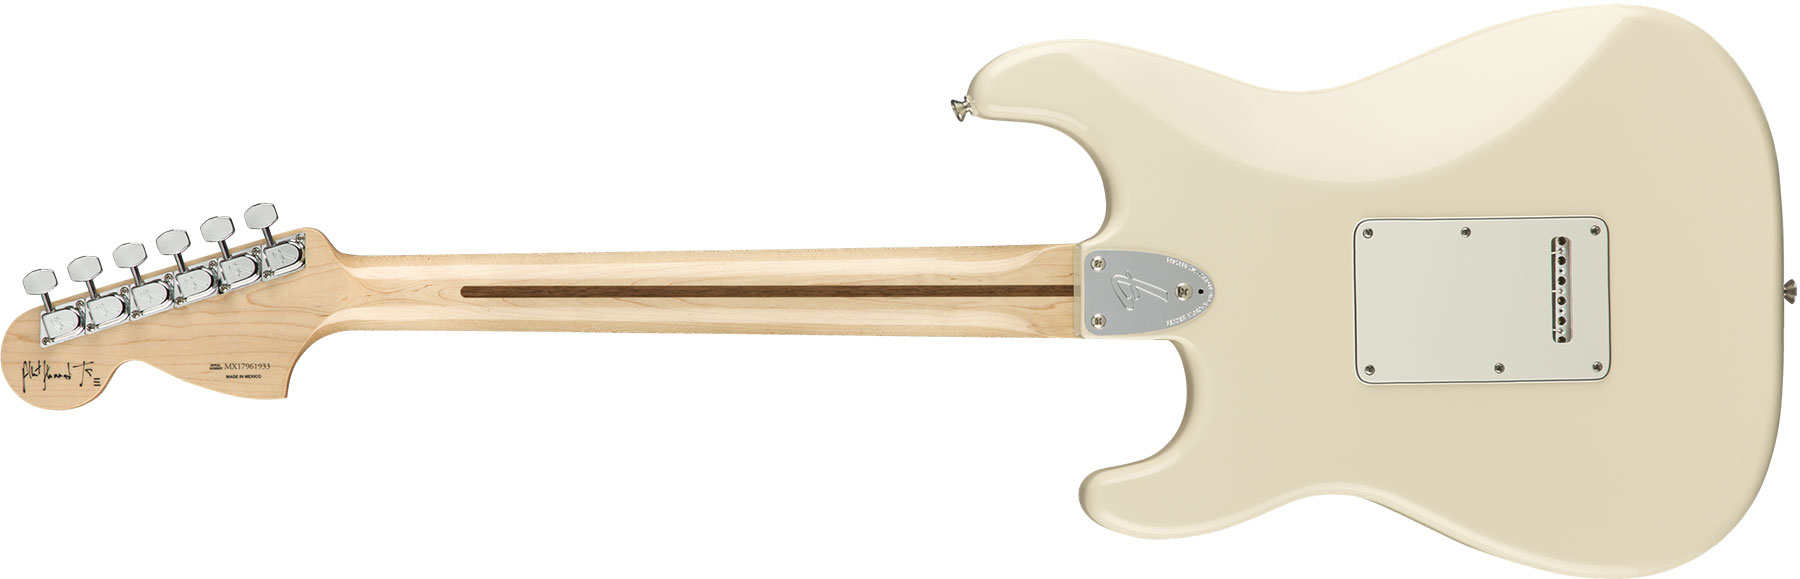 Fender Albert Hammond Strat Mex Signature 3s Trem Rw - Olympic White - Elektrische gitaar in Str-vorm - Variation 1